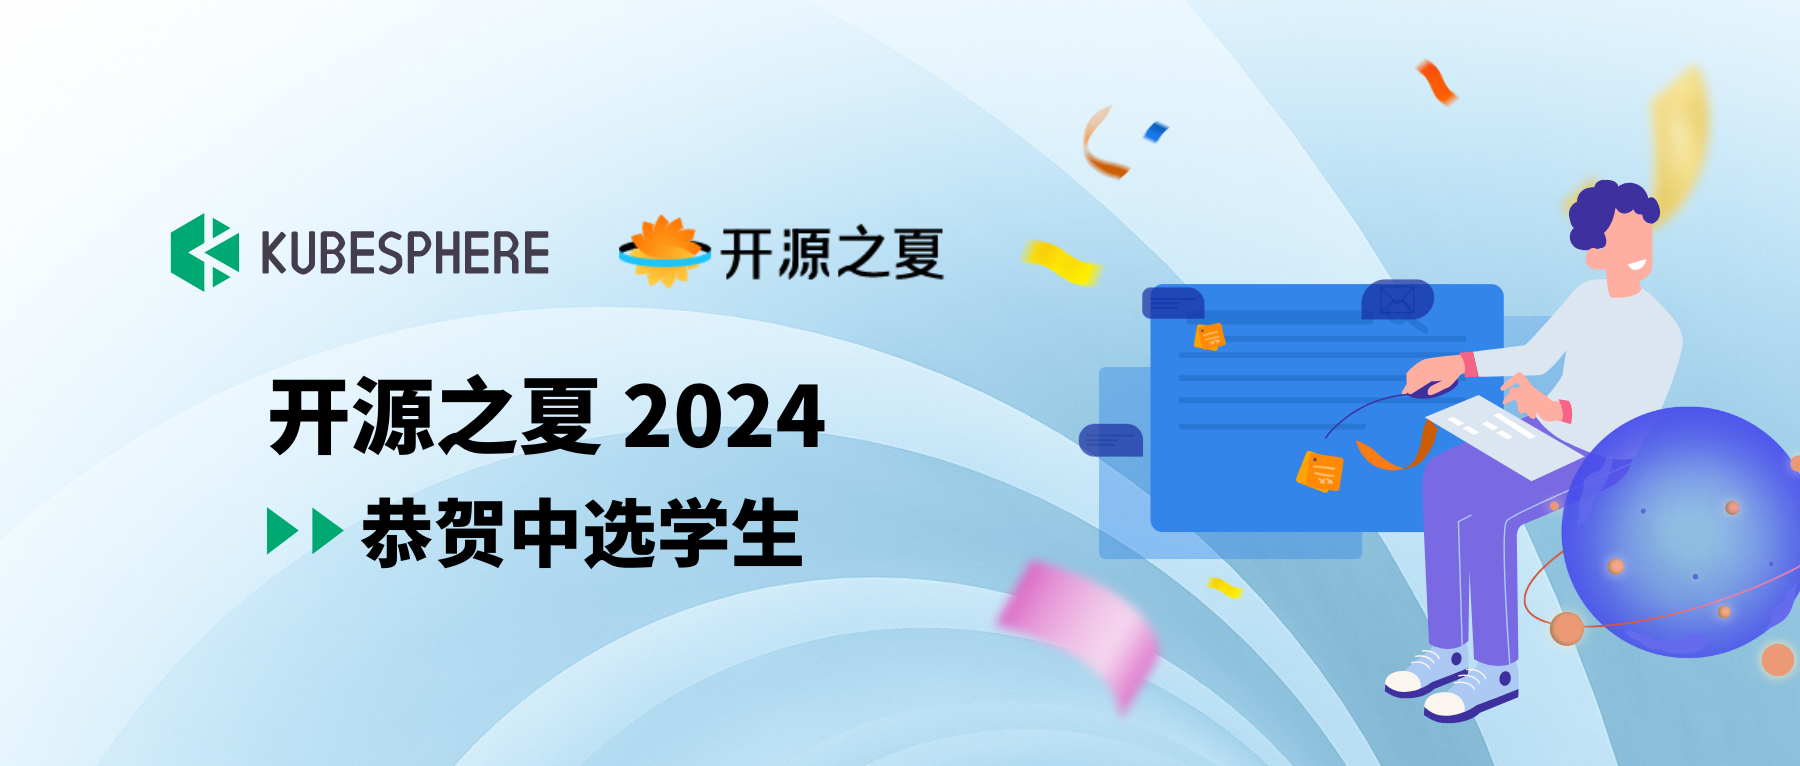 祝贺开源之夏 2024 KubeSphere 社区项目中选学生！